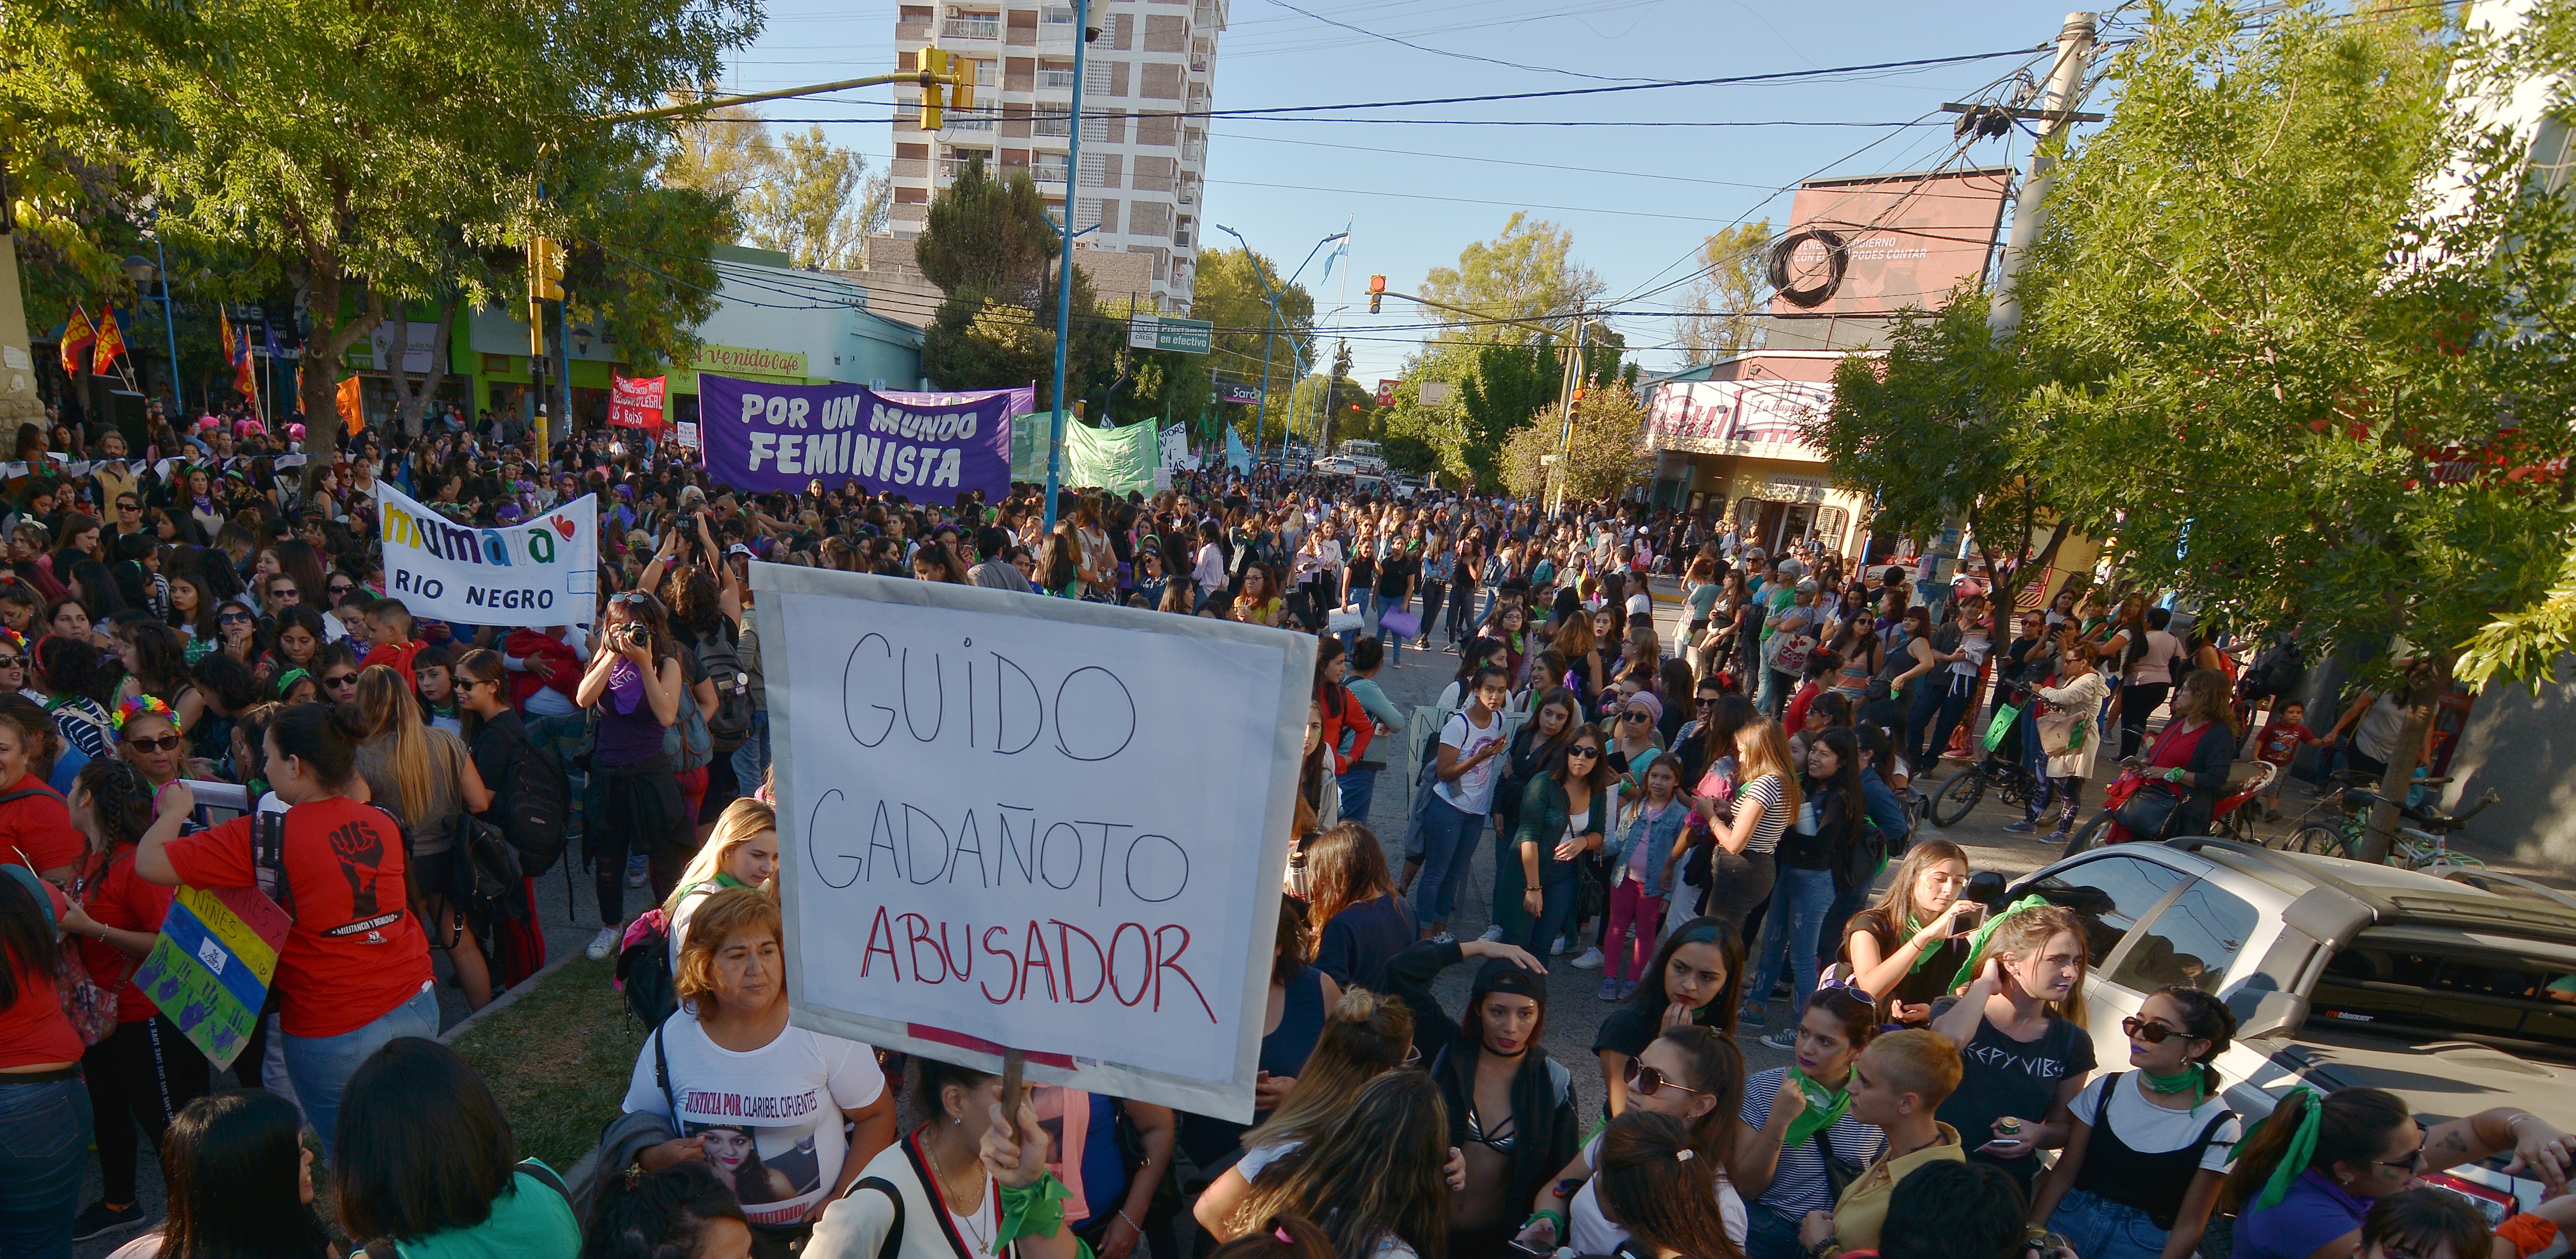 Gadañoto había sido blanco de acusaciones en distintas protestas realizadas en Roca. (foto: archivo)